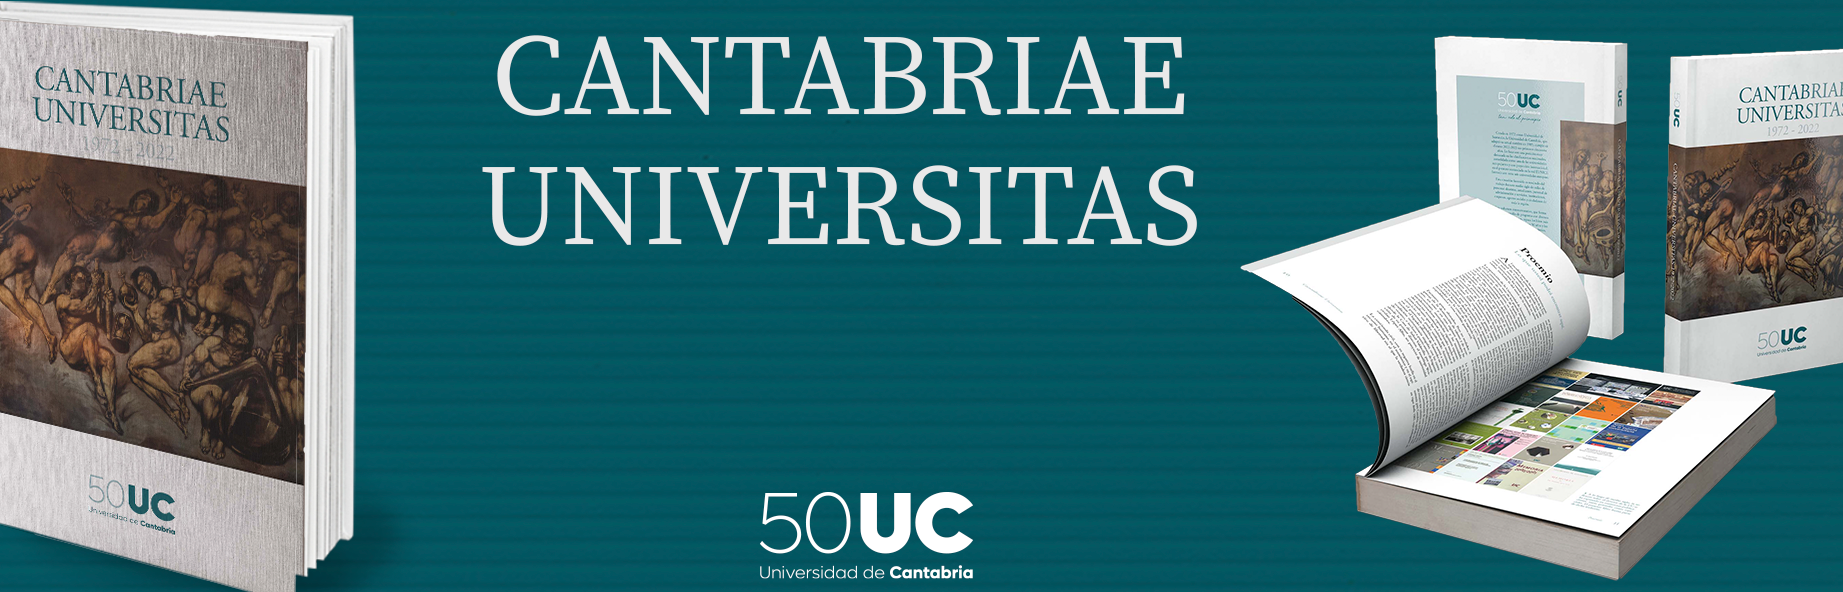 Universidad de Cantabria		Santander	Cantabria	Colección